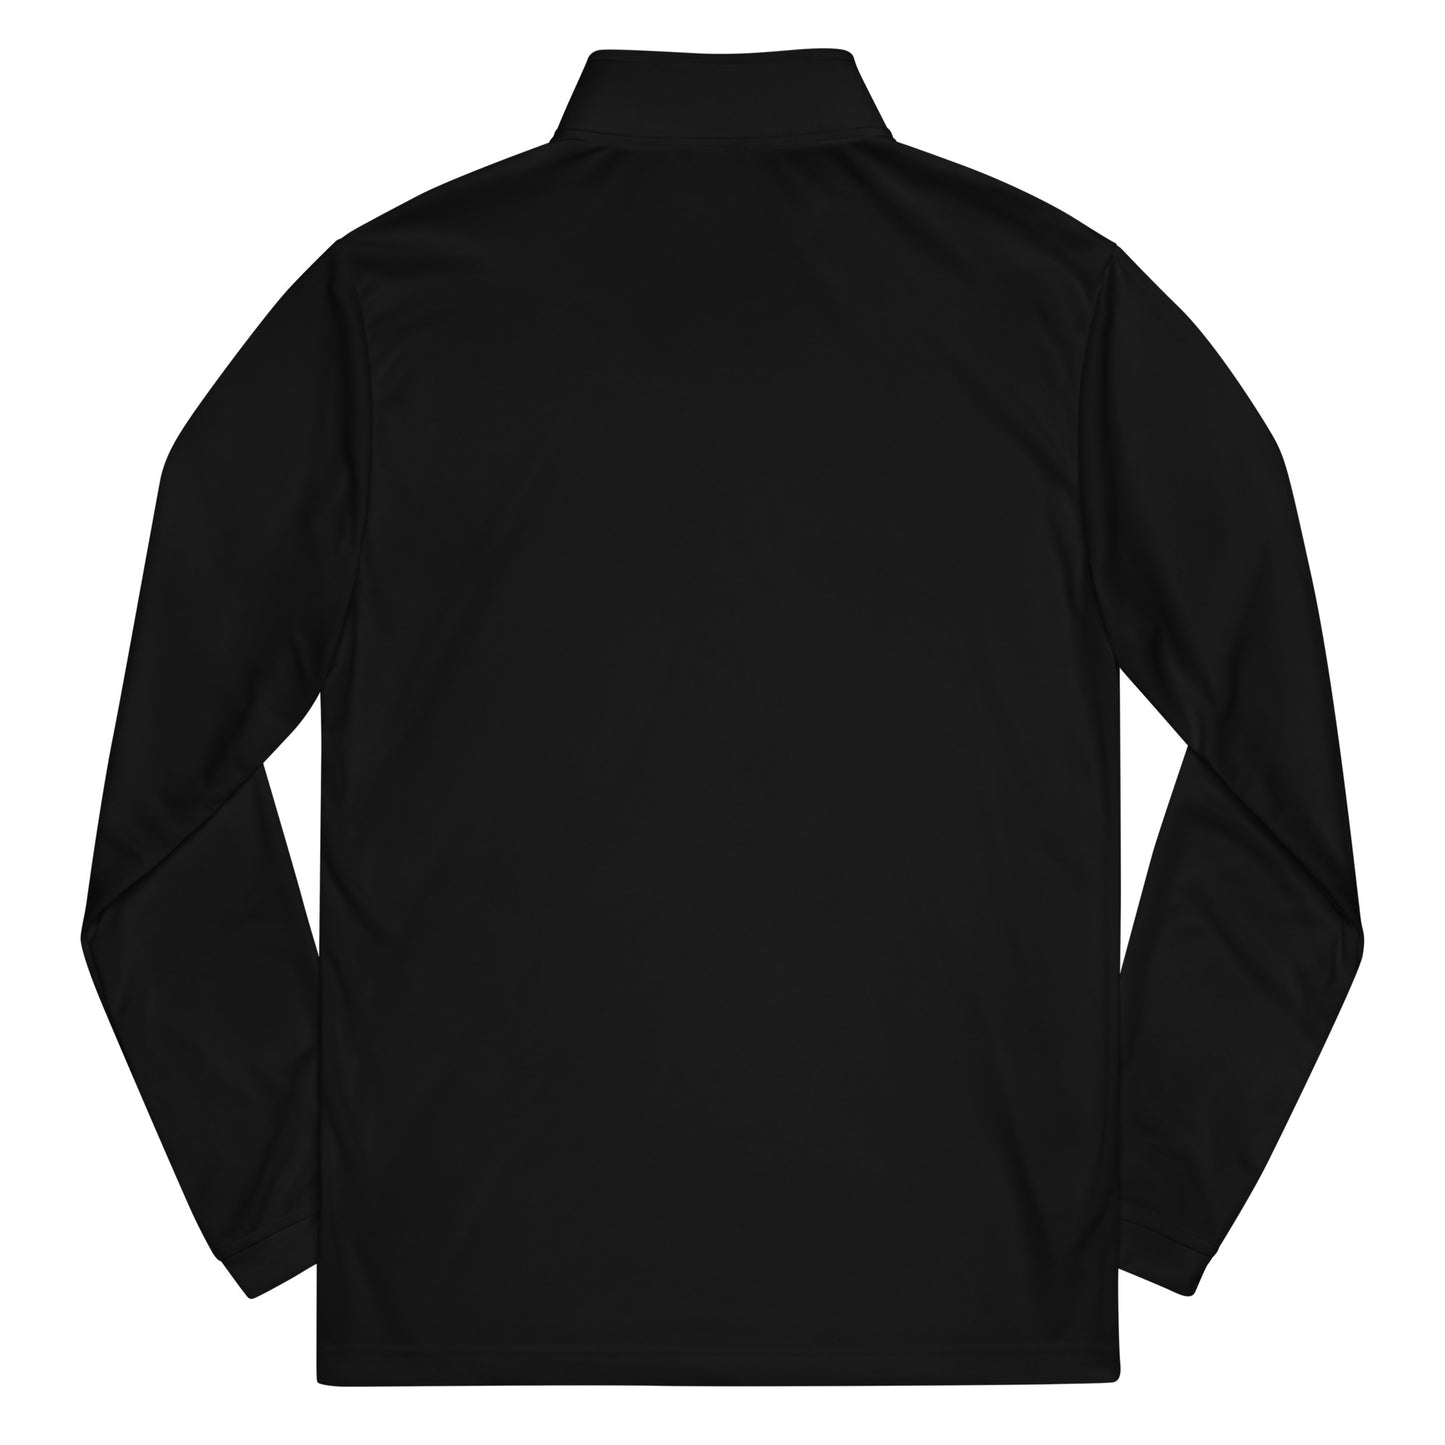 Adidas | Men's Quarter zip pullover - Stanley